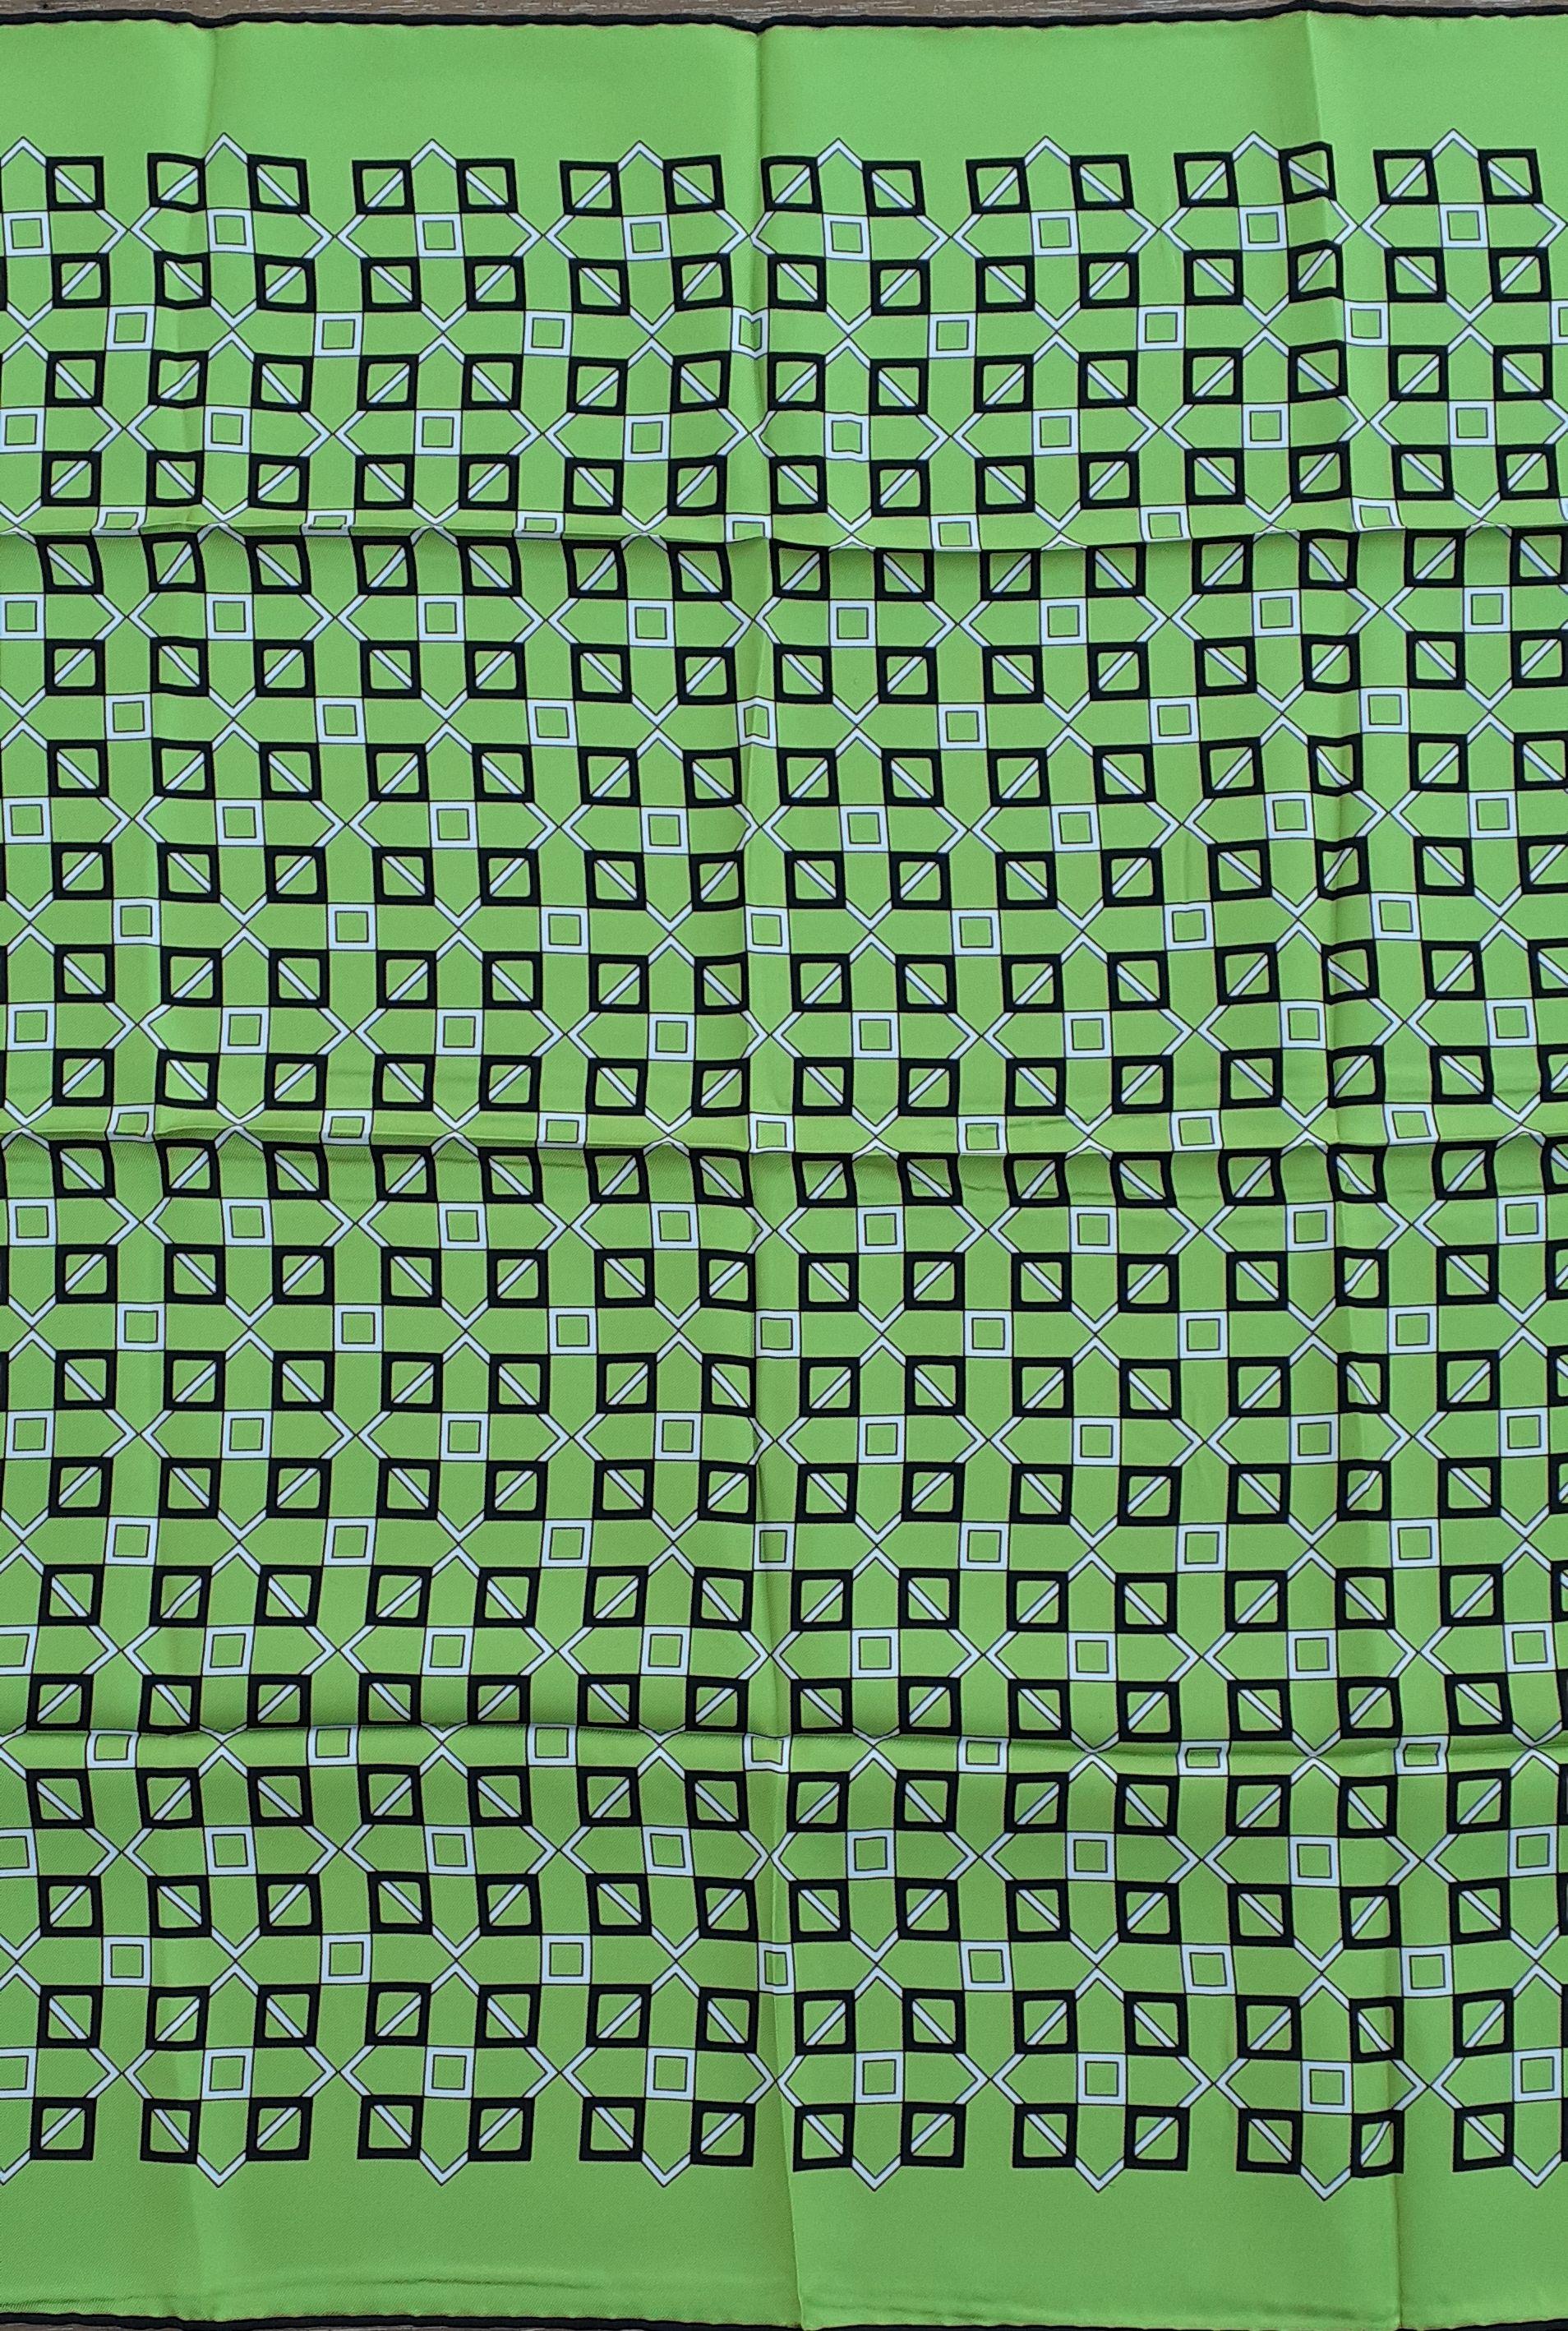 Magnifique écharpe Hermès authentique

Imprimés géométriques (carrés)

De la collection pour hommes ; peut convenir aux hommes et aux femmes.

Fabriqué en France

Fabriqué en 100% soie

Coloris : Fond vert pomme (plus éclatant que sur les photos),